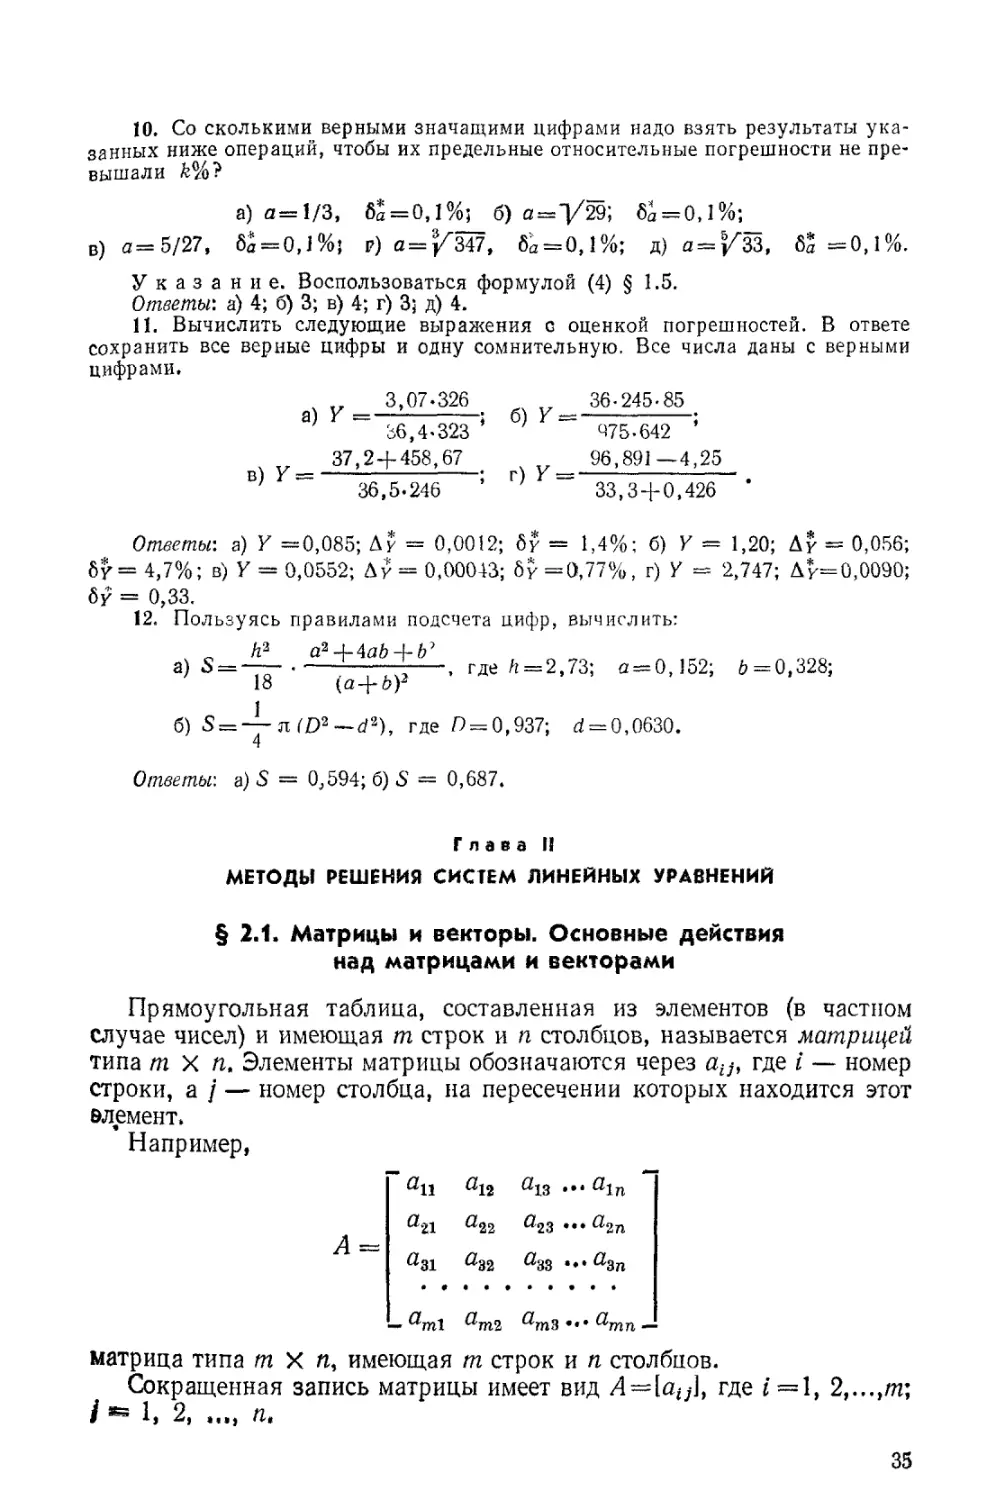 ГЛАВА II. МЕТОДЫ РЕШЕНИЯ СИСТЕМ ЛИНЕЙНЫХ УРАВНЕНИЙ
§ 2.1. Матрицы и векторы. Основные действия над матрицами и векторами